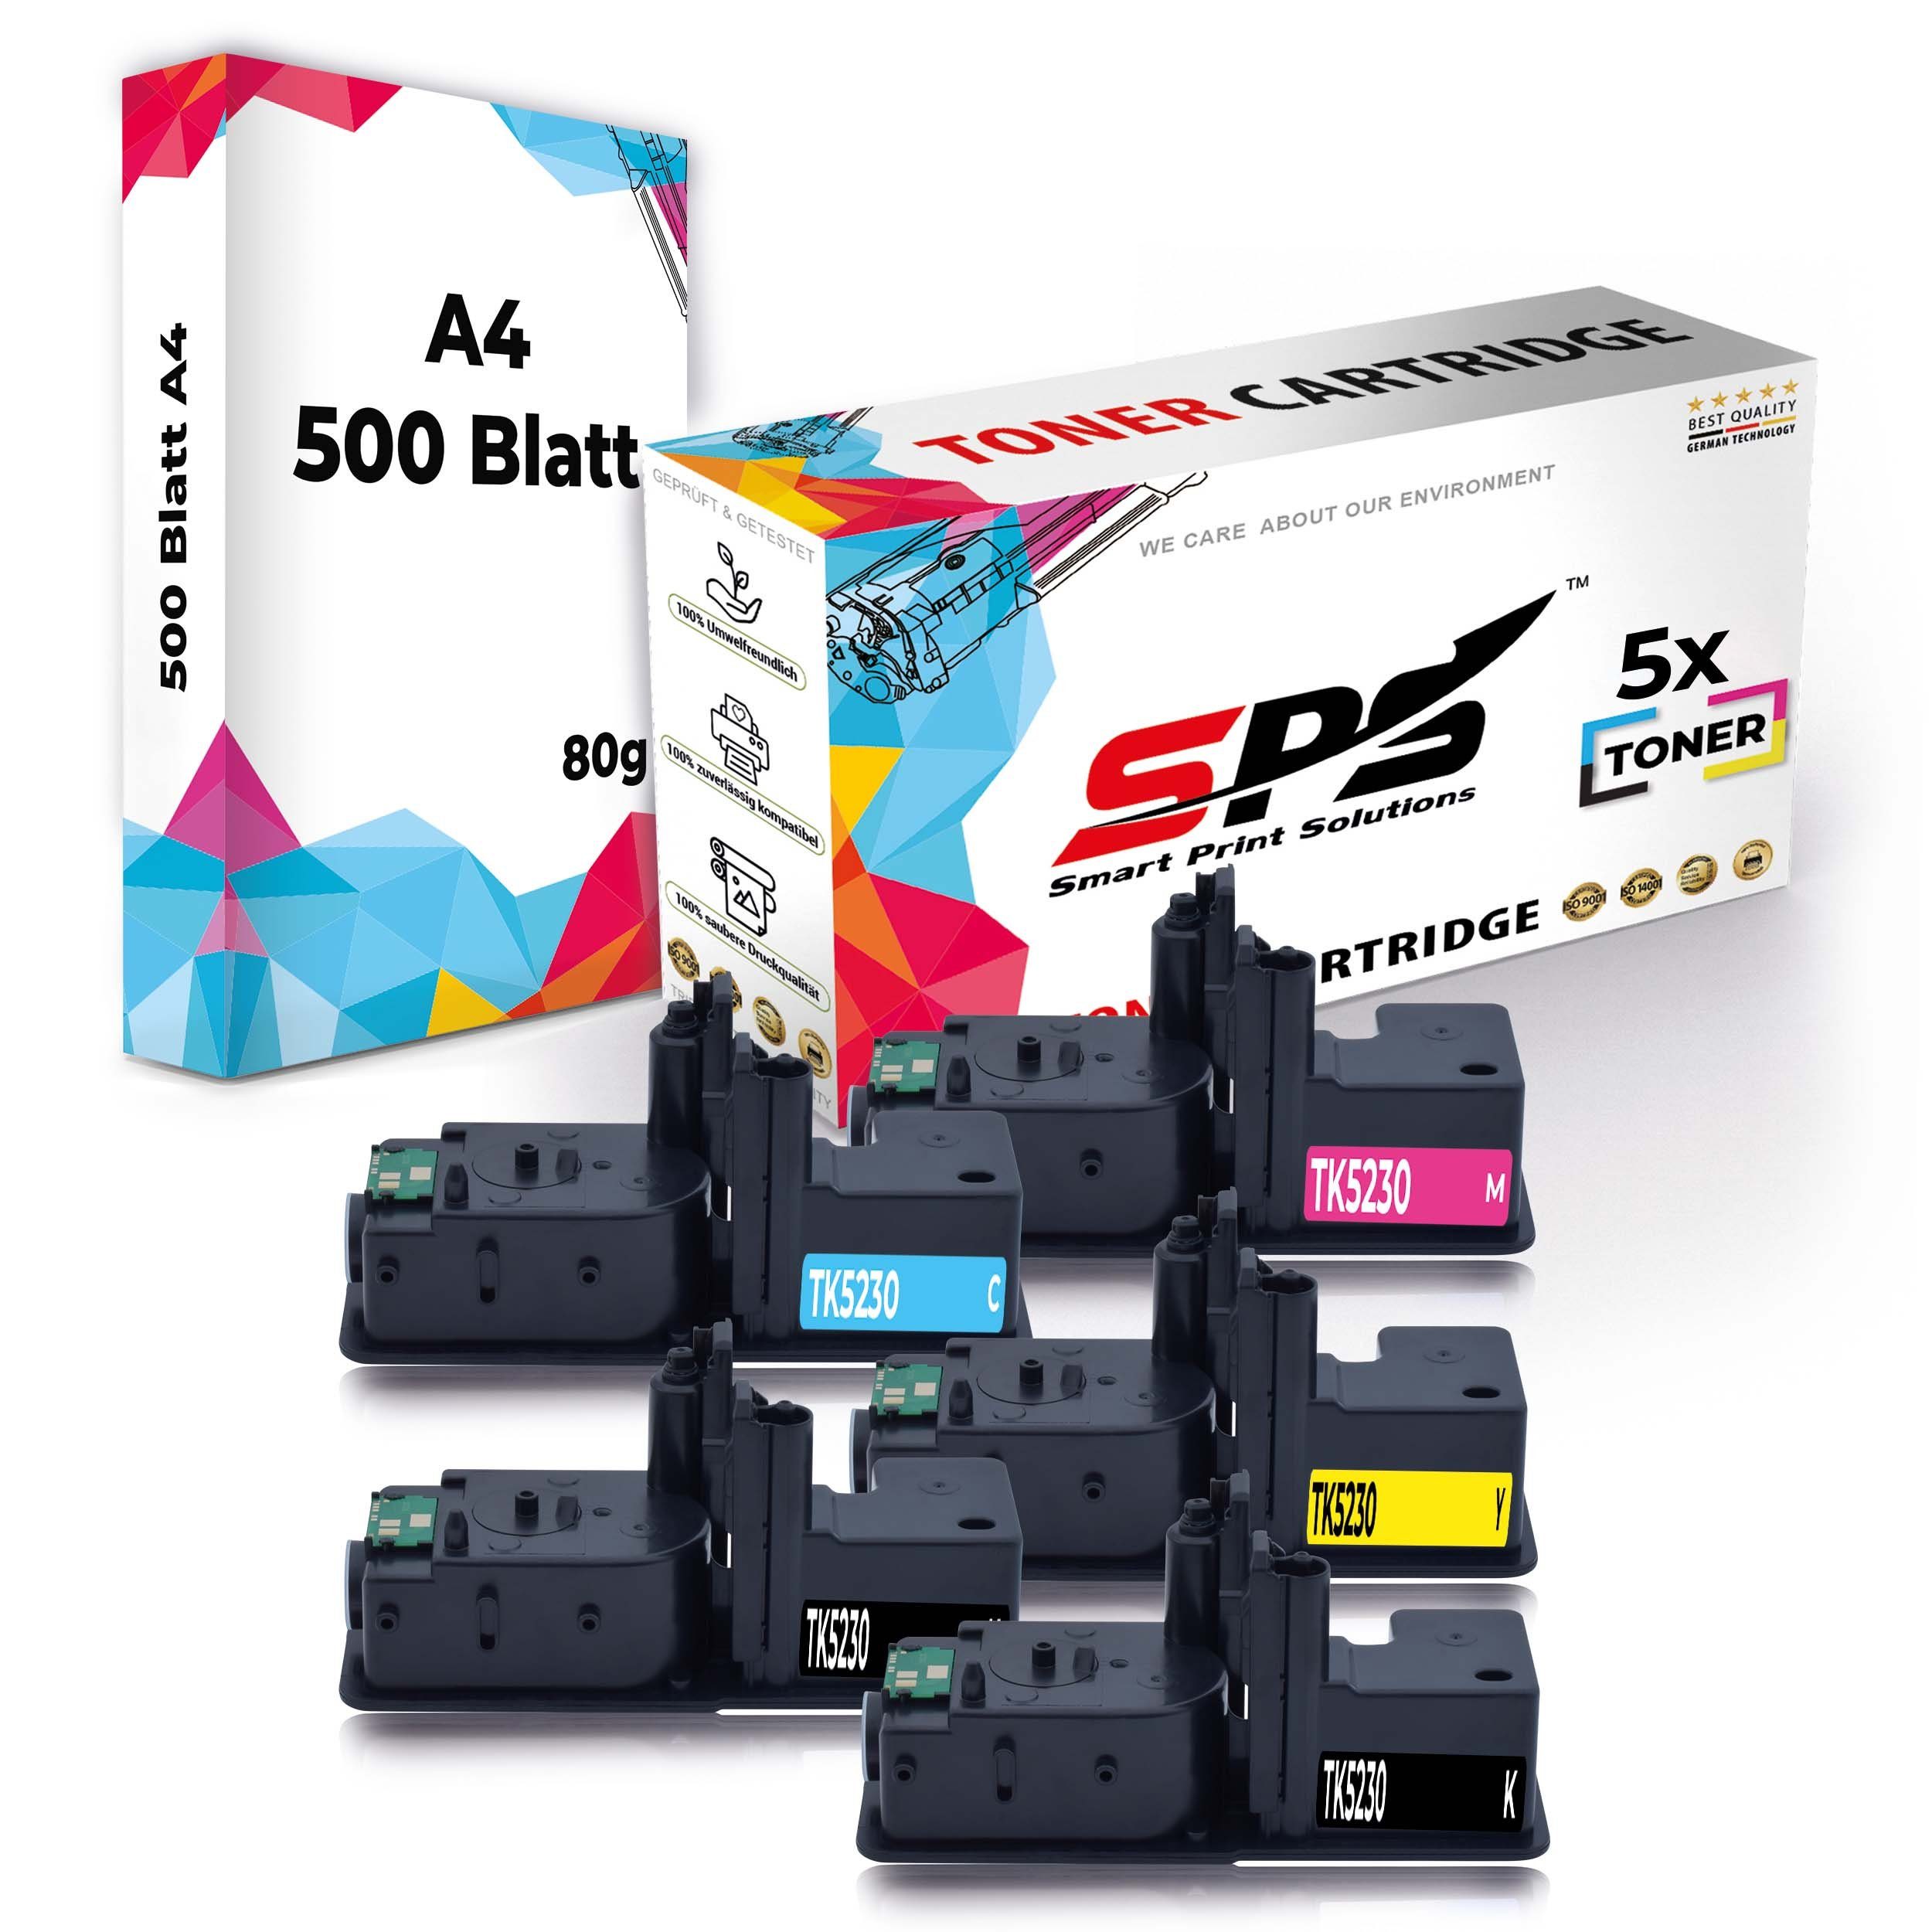 A4 Multipack SPS (6er + A4 Toner,1x Kompatibel, Set Druckerpapier) Druckerpapier 5x Tonerkartusche Pack, 5x